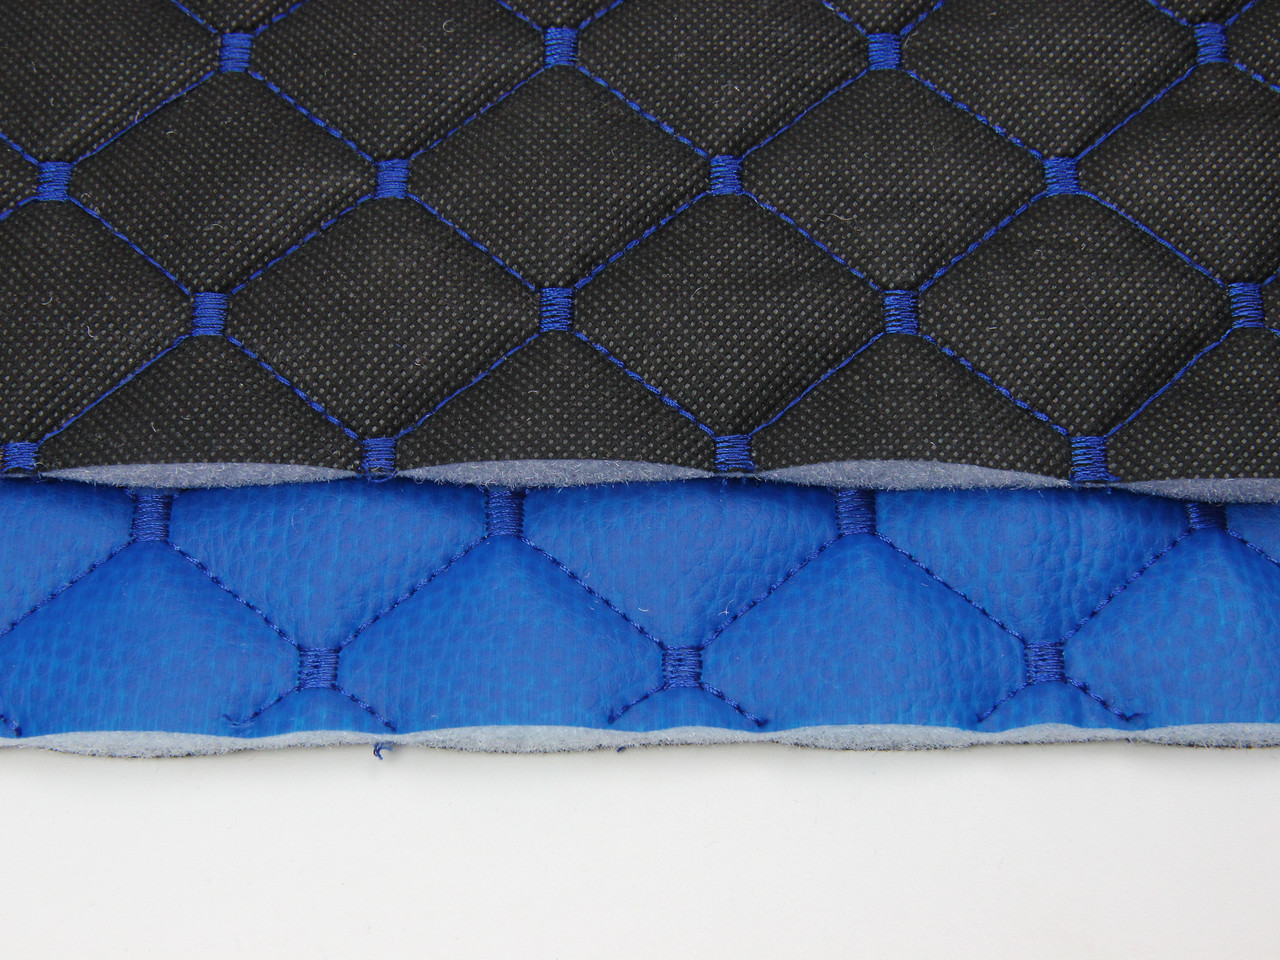 Кожзам стёганый синий «Ромб» (прошитый синей нитью) дублированный синтепоном и флизелином, ширина 1,35м детальная фотка